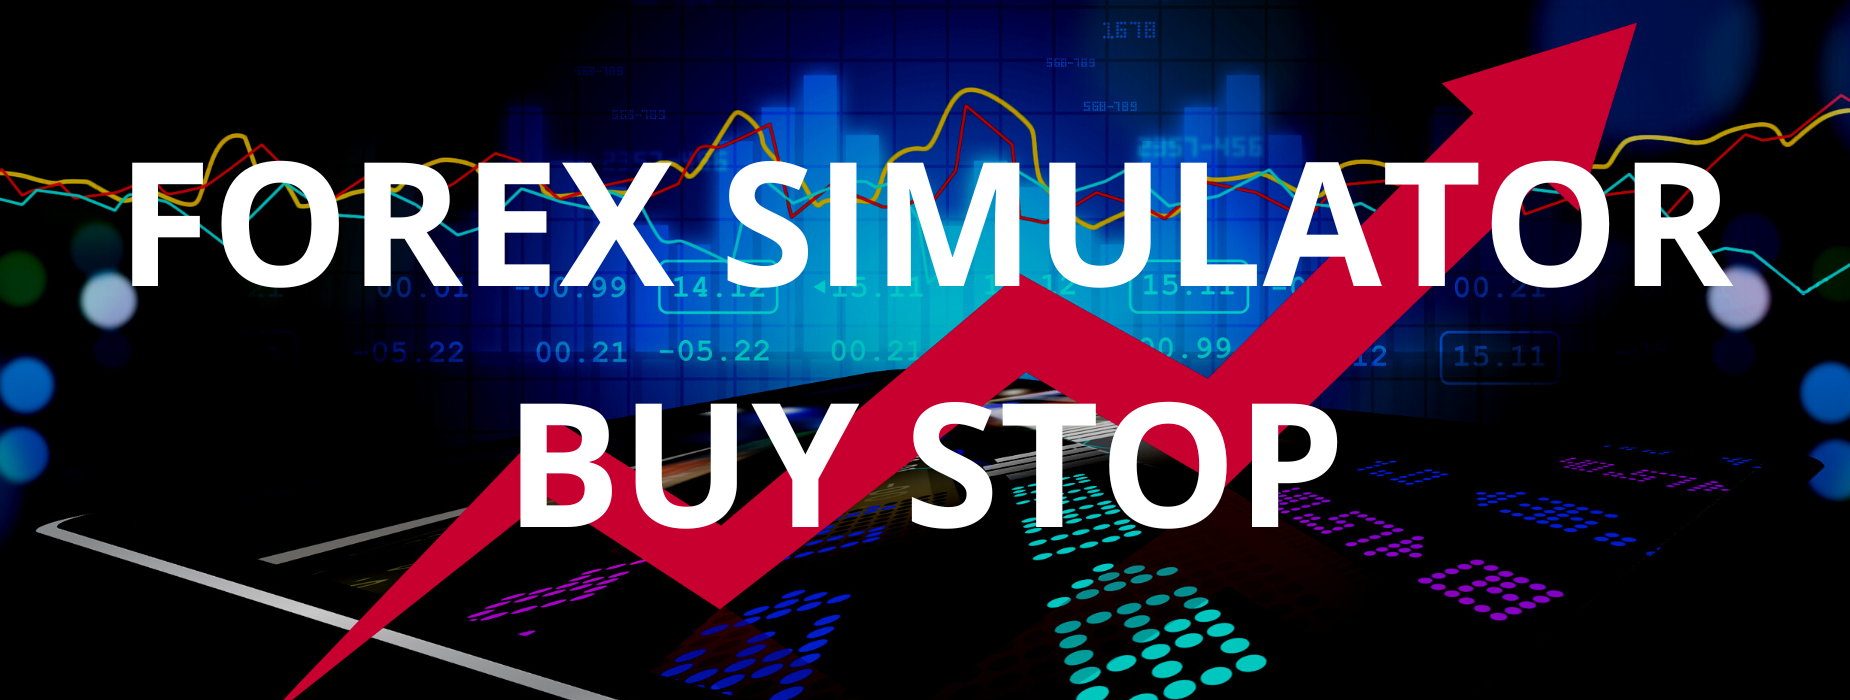 forex simulator buy stop